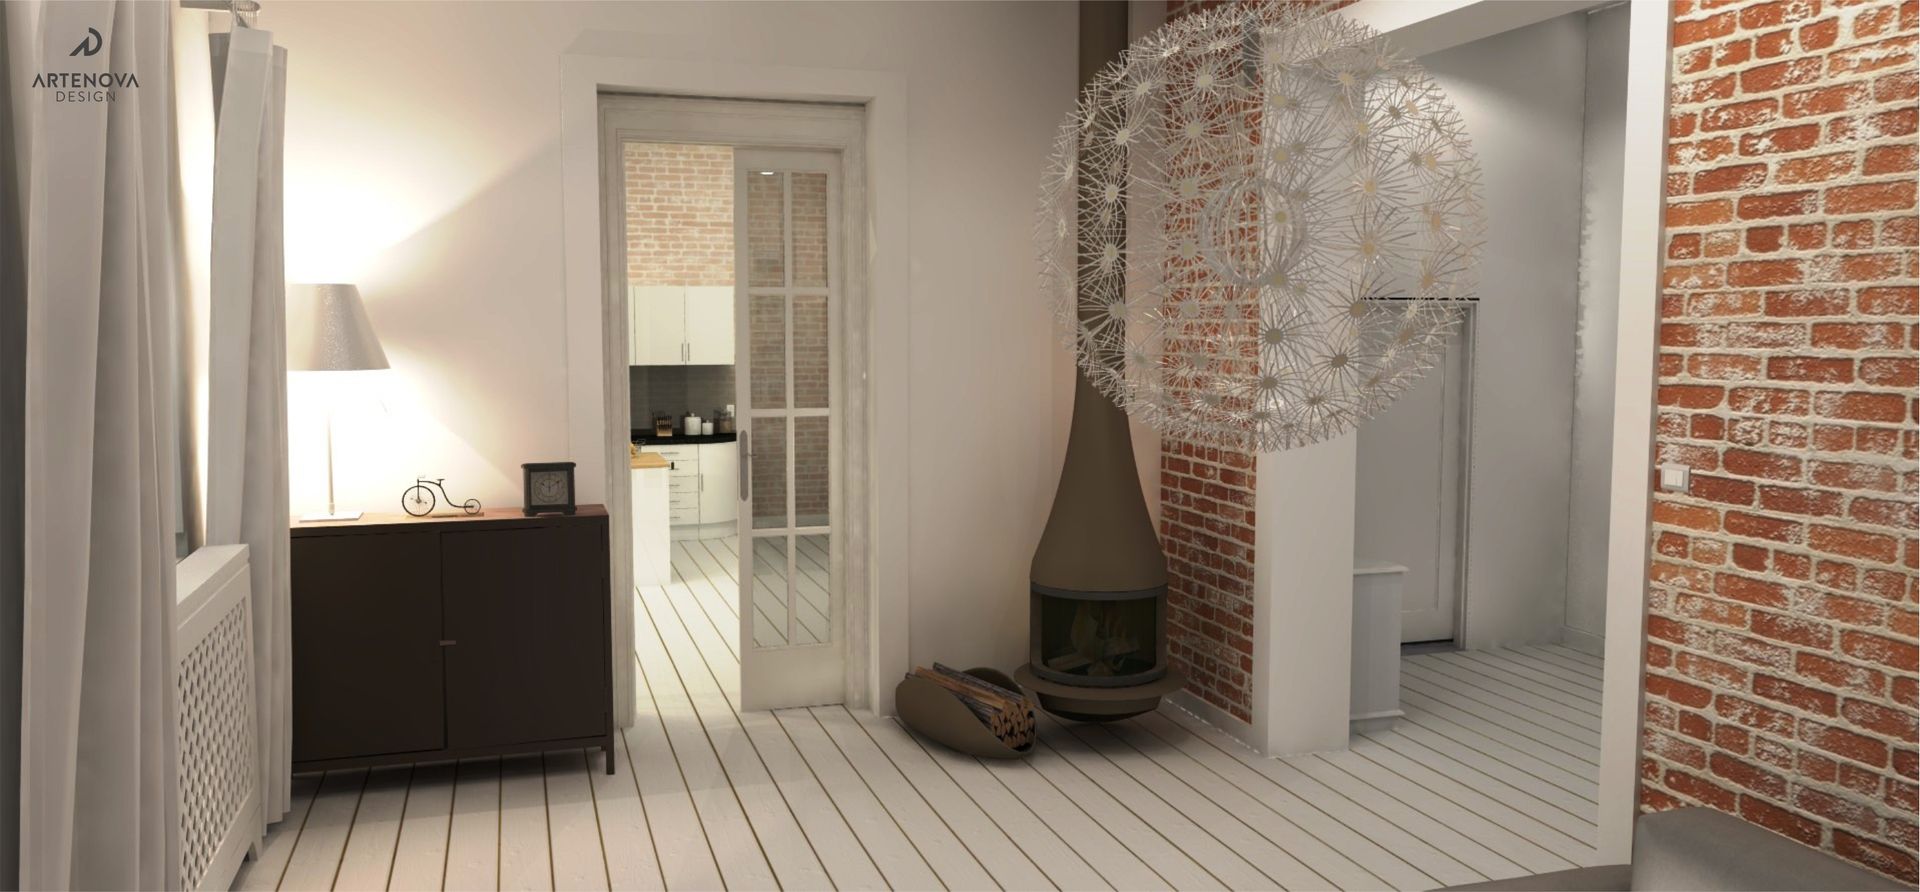 Rstykalne mieszkanie w kamienicy Warszawa, Artenova Design Artenova Design Living room